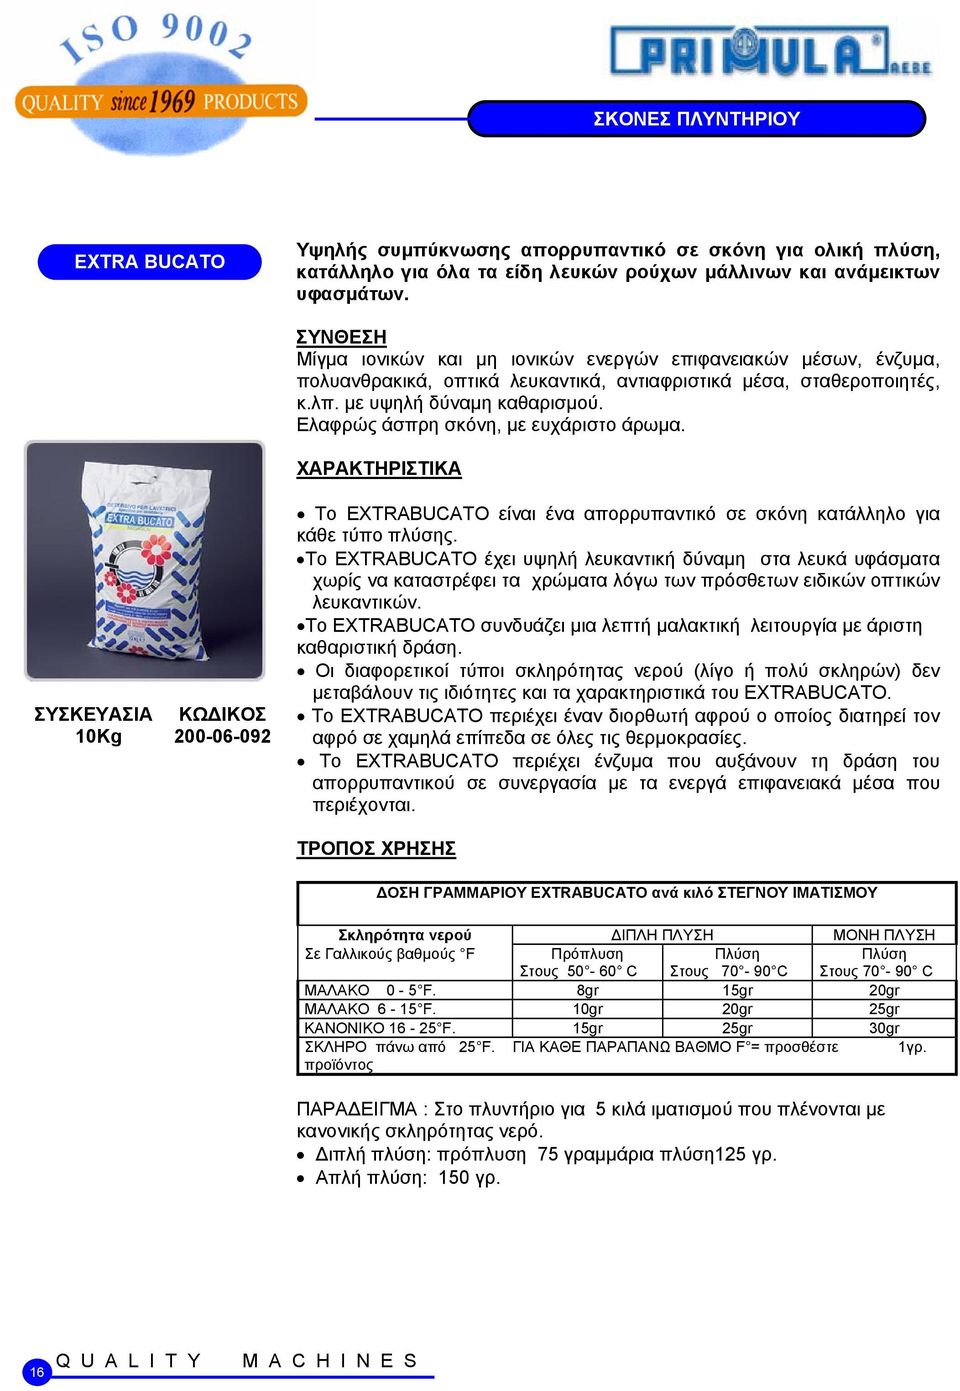 Ελαφρώς άσπρη σκόνη, με ευχάριστο άρωμα. 10Kg 200-06-092 Το EXTRABUCATO είναι ένα απορρυπαντικό σε σκόνη κατάλληλο για κάθε τύπο πλύσης.